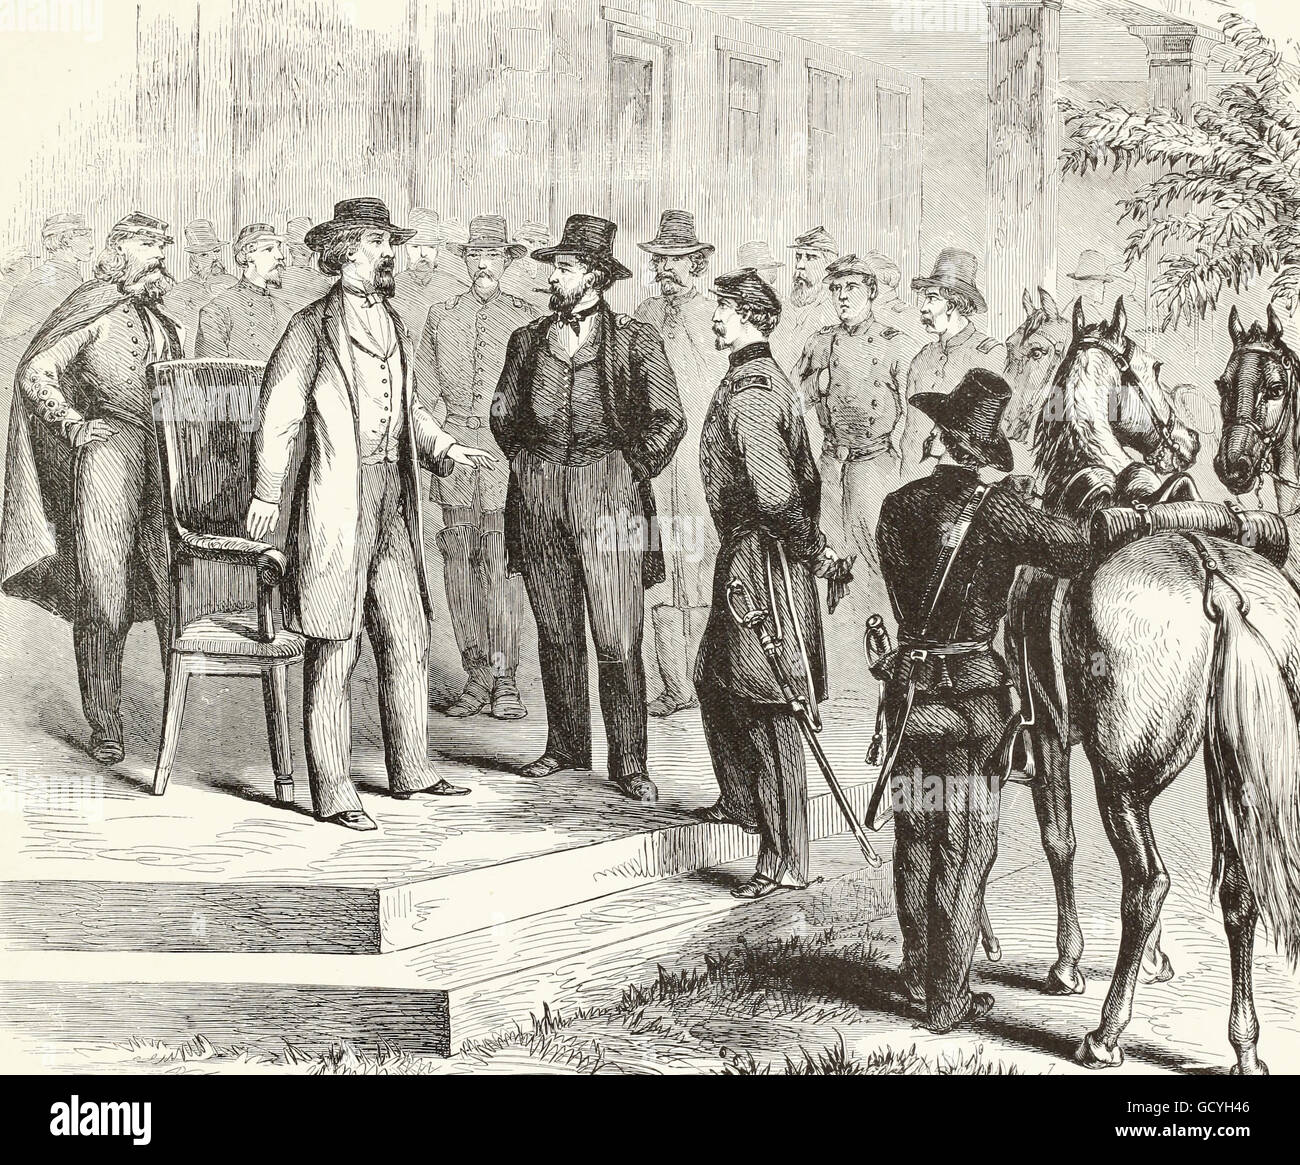 Die Belagerung von Vicksburg - General Ulysses Grant treffen die konföderierten General Pemberton an das Steinhaus in der Konföderierten funktioniert, am Morgen des 4. Juli 1863. USA Bürgerkrieg Stockfoto